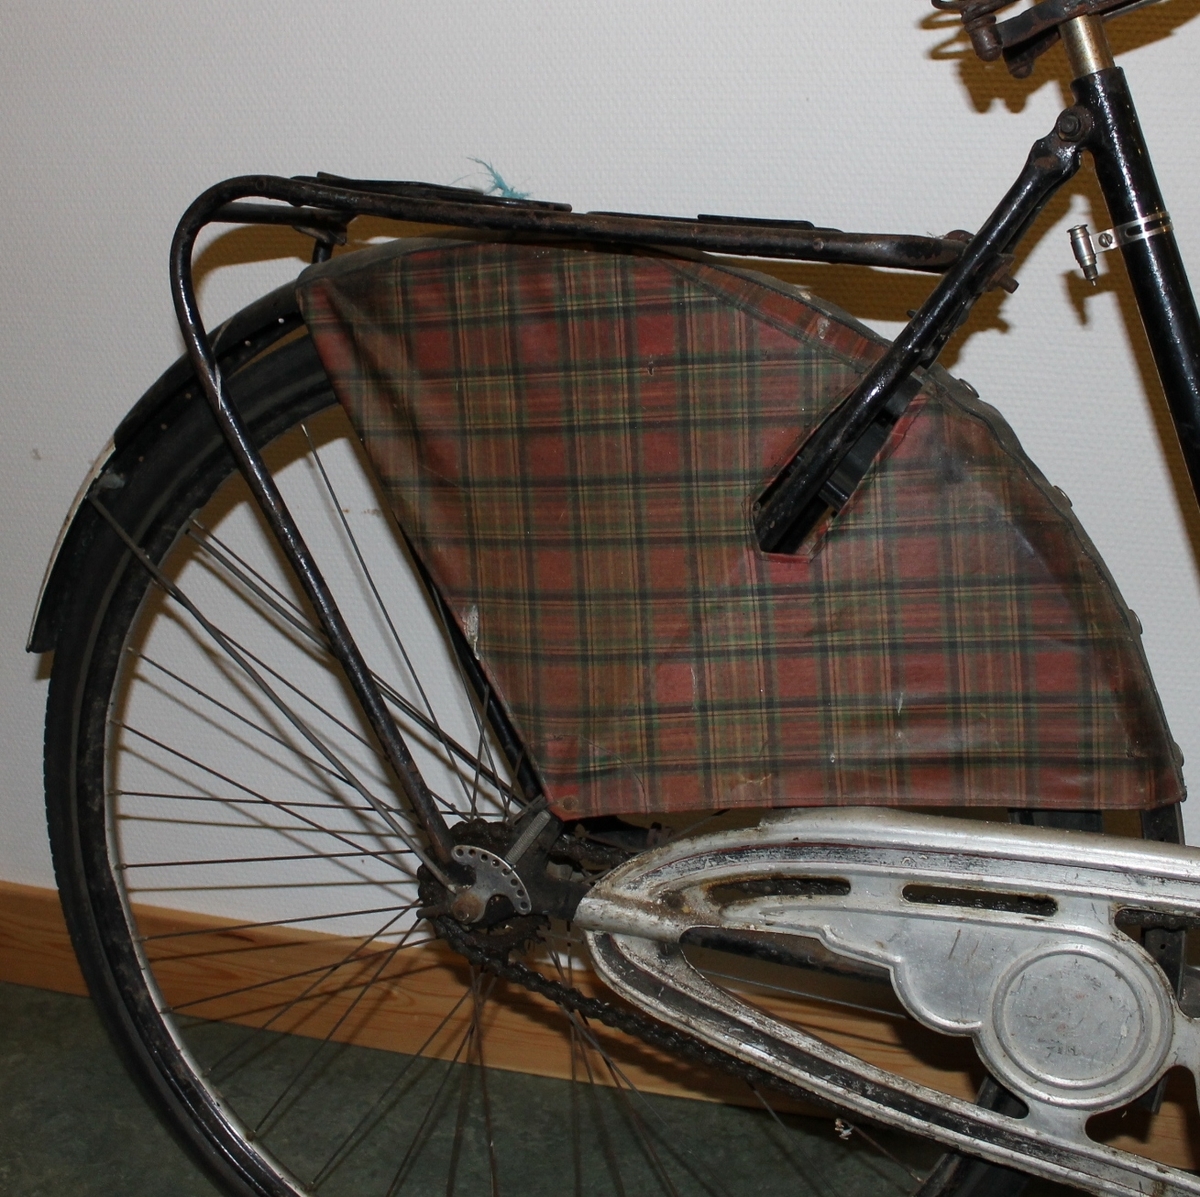 Dame sykkel med deler fra 1940-årene. Originale setetrekk og skjerm til dekket bak.